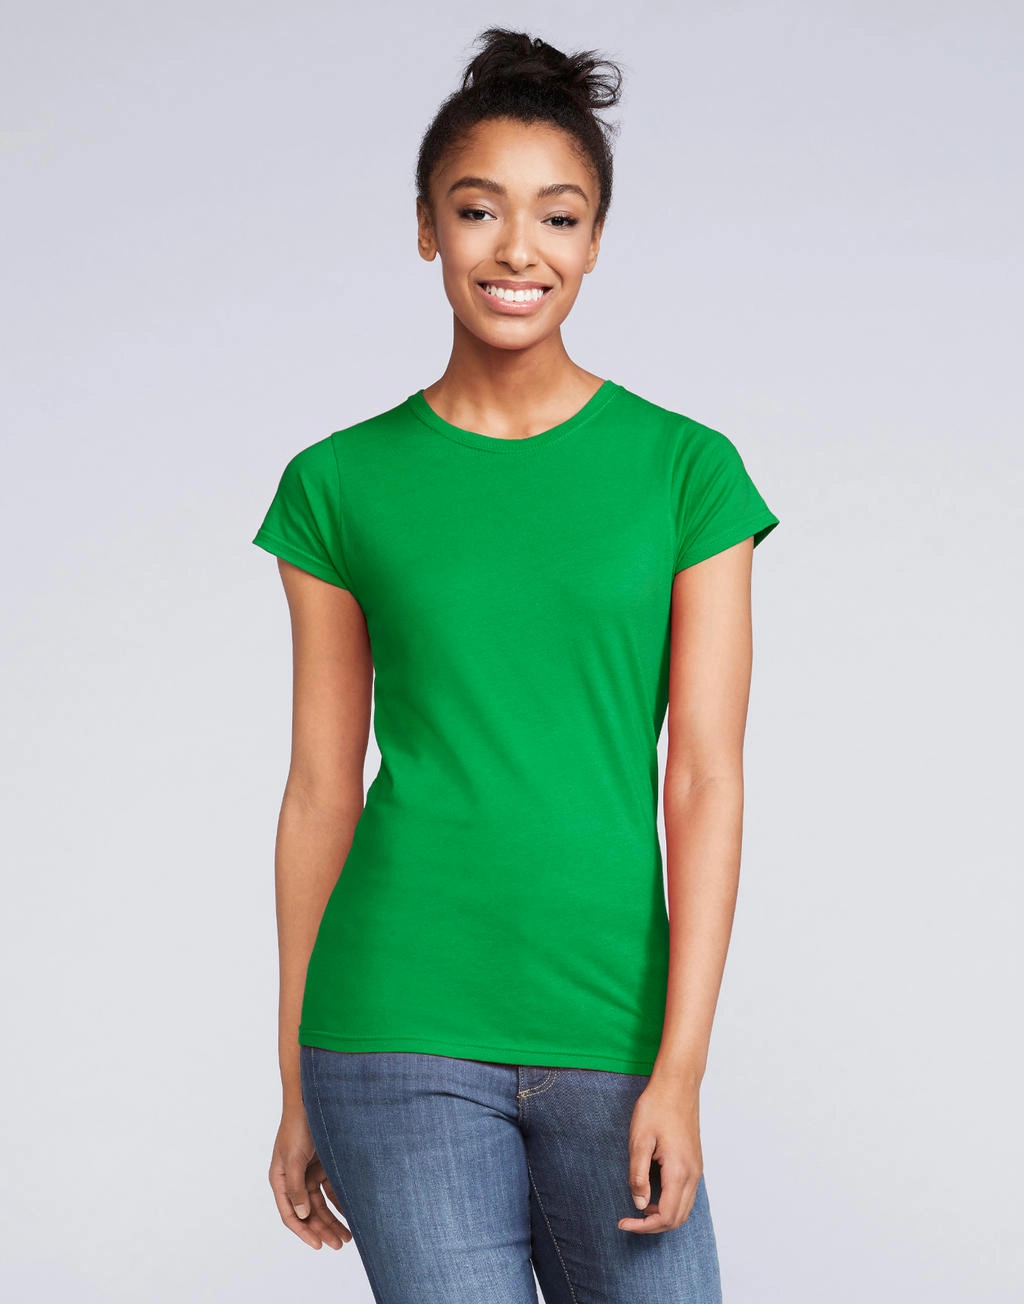 Softstyle® Ladies` T-Shirt zum Besticken und Bedrucken mit Ihren Logo, Schriftzug oder Motiv.